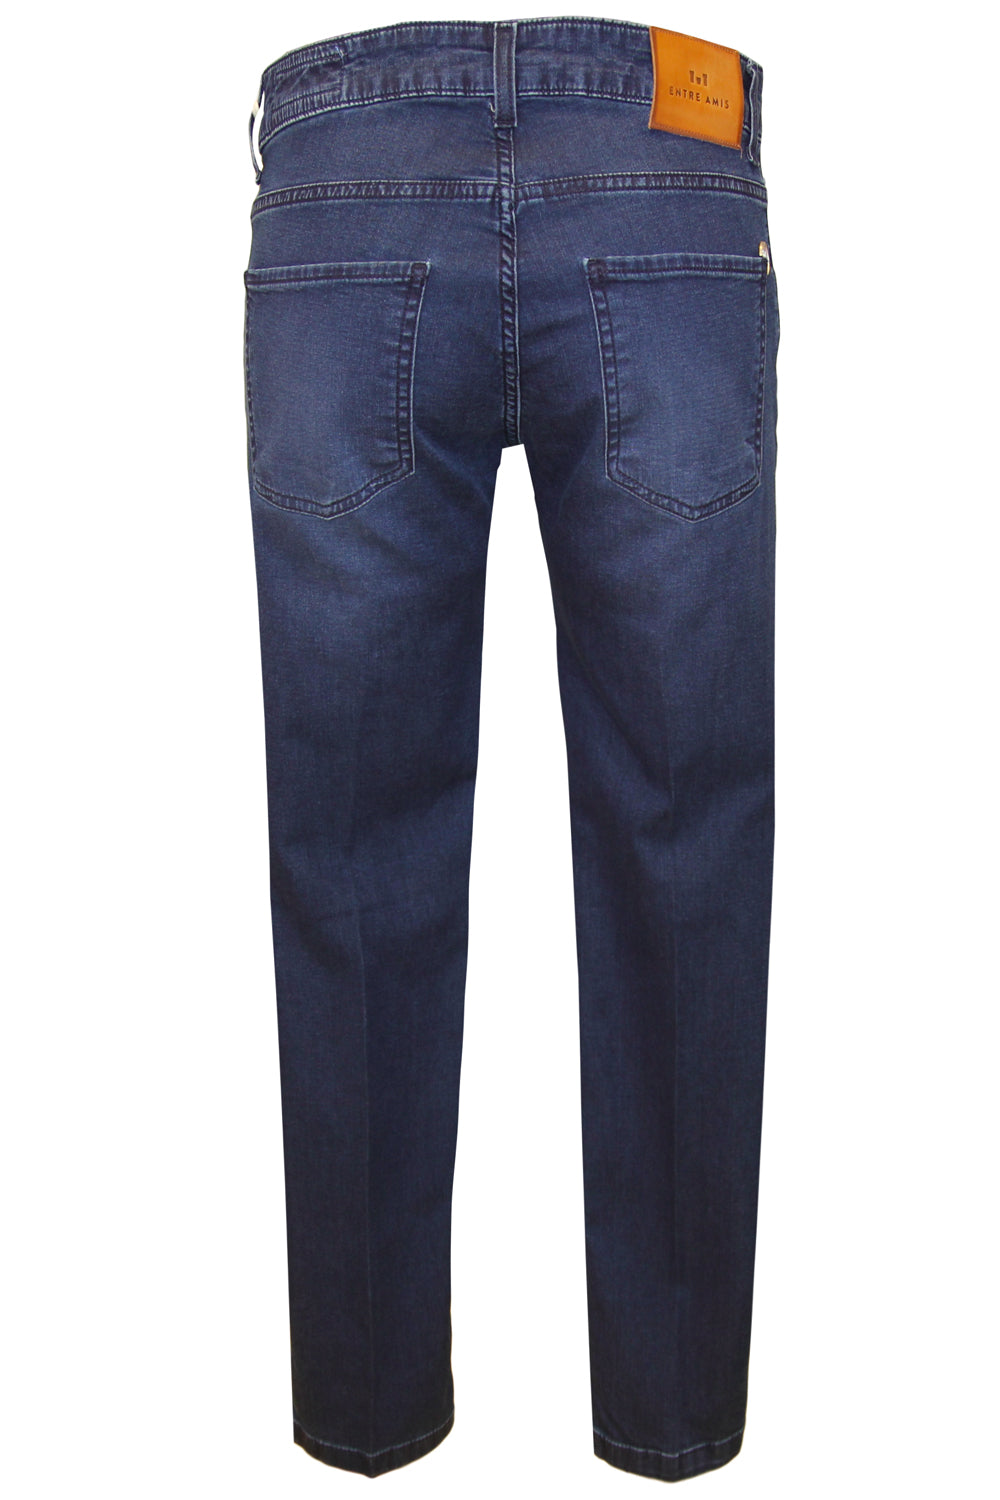 ENTRE AMIS Jeans modello Capri